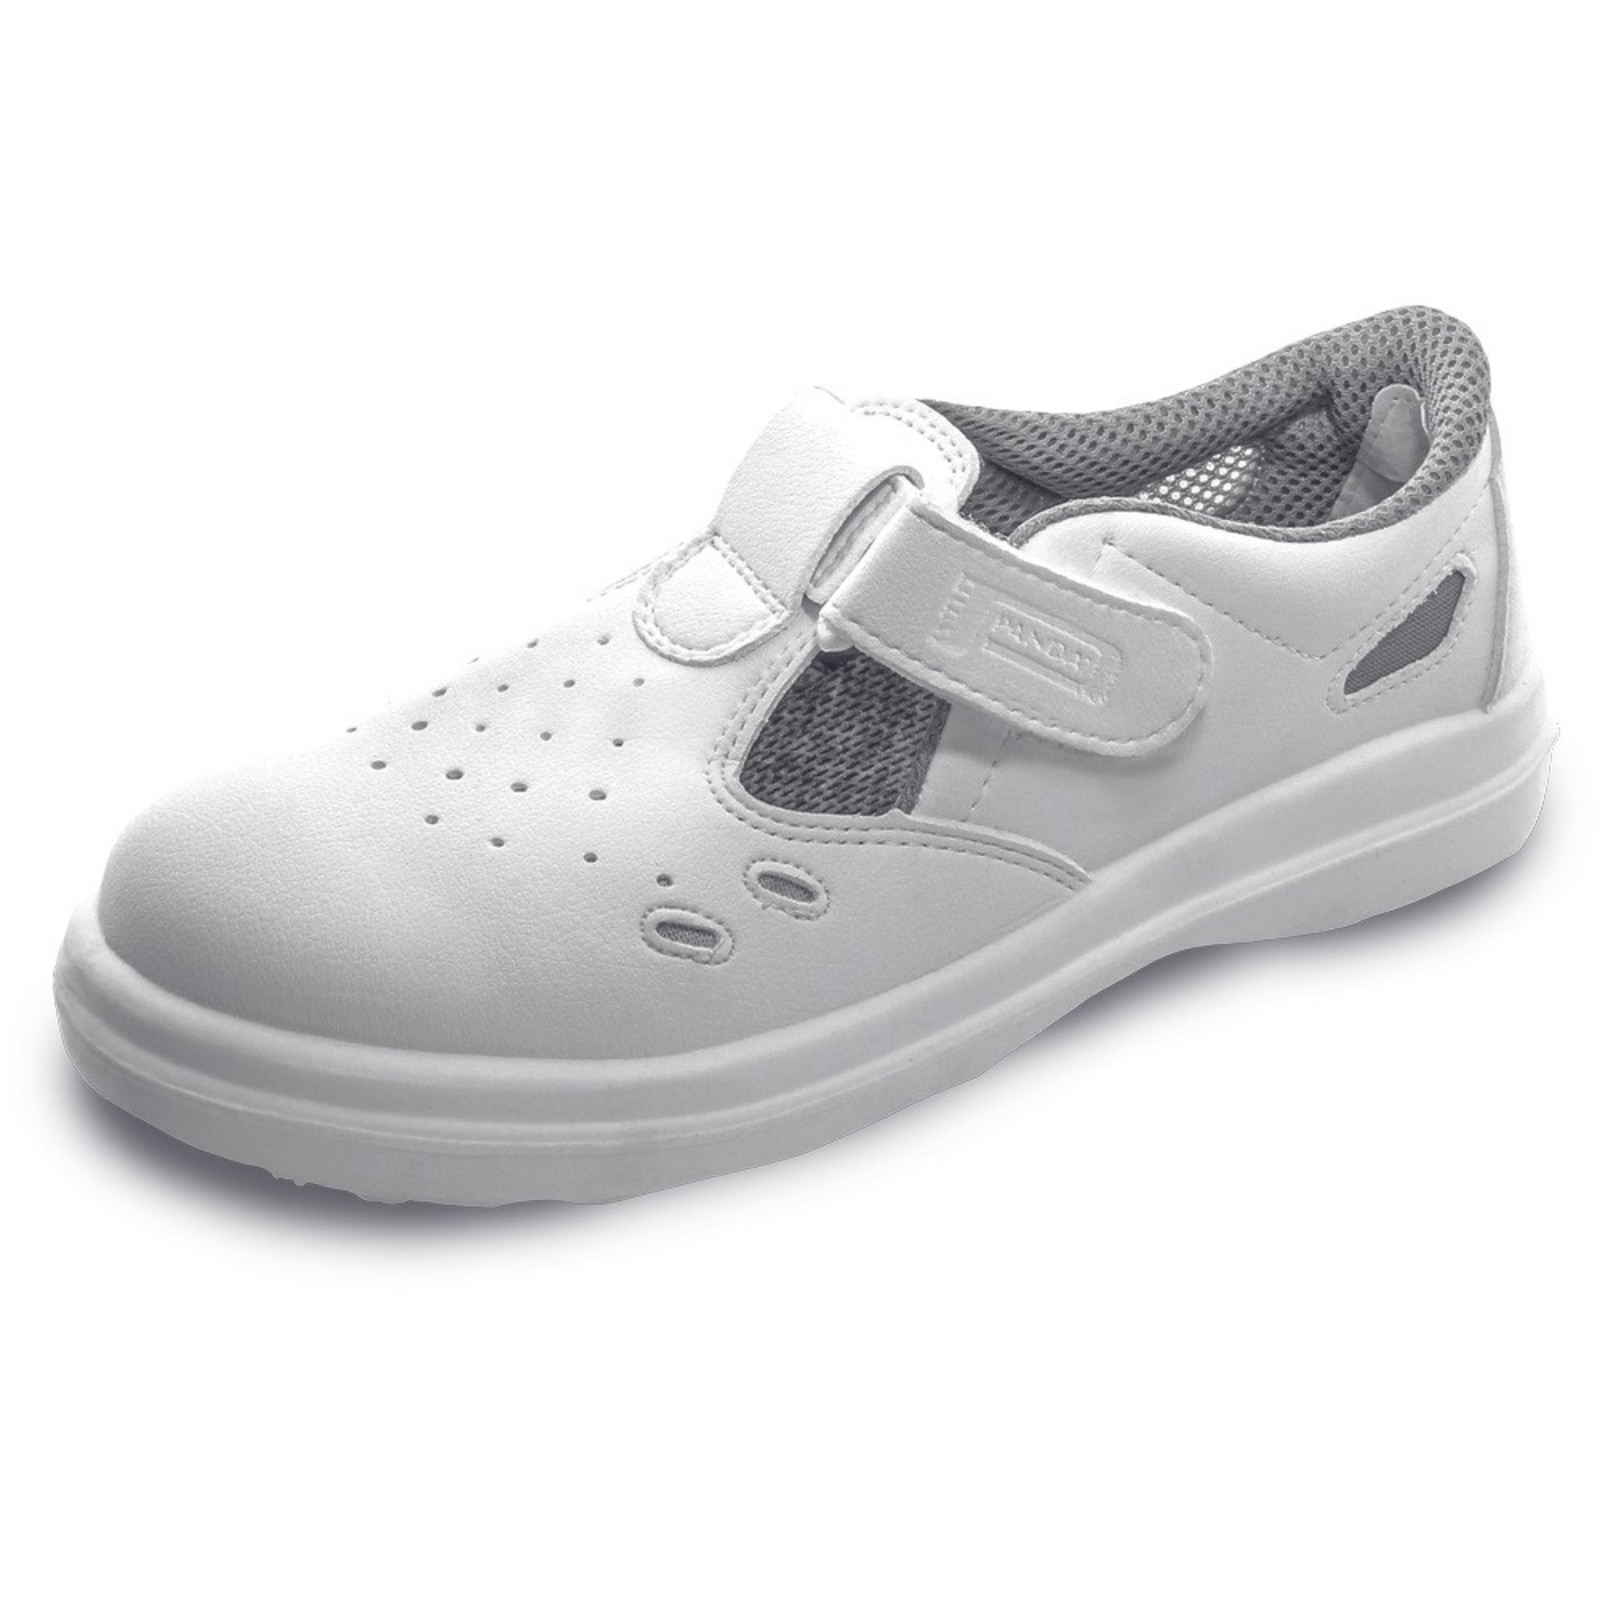 Bezpečnostné sandále Panda Sanitary Lybra S1 SRC - veľkosť: 40, farba: biela